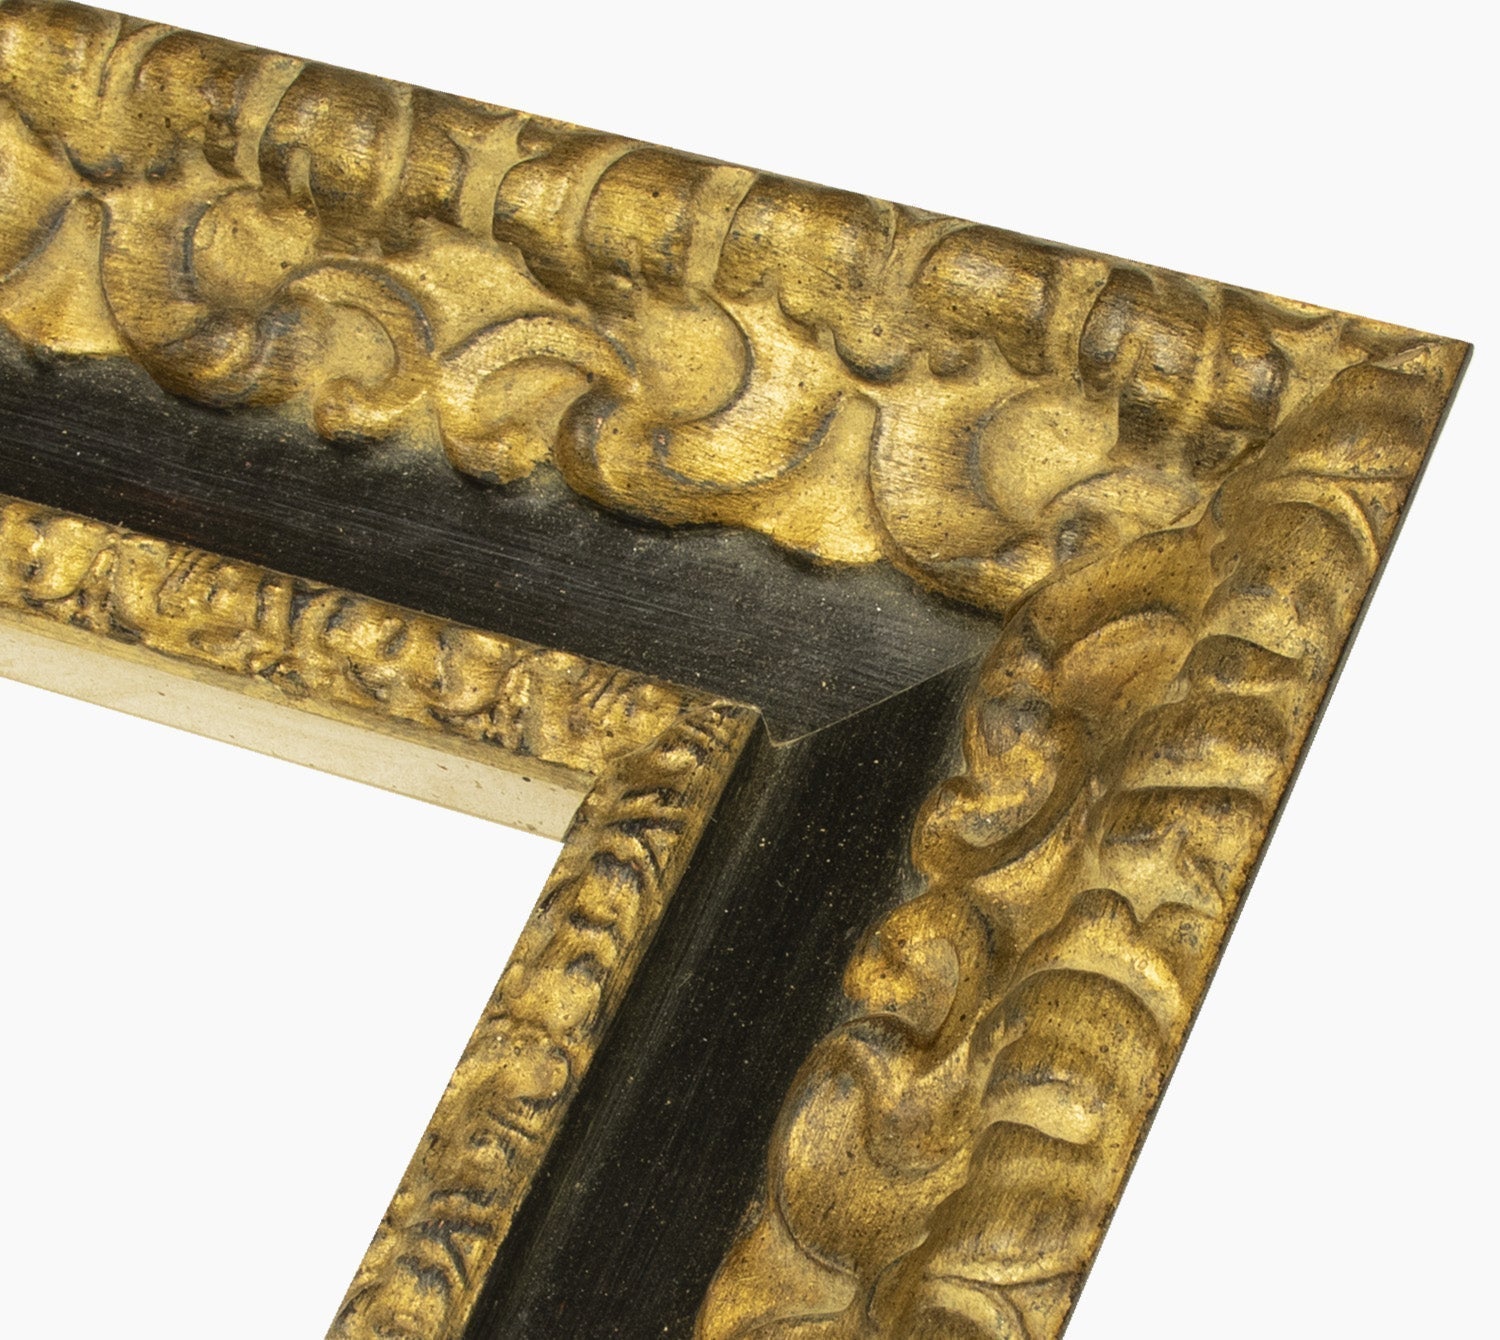 4480.601 cadre en bois à la feuille d'or gorge noire mesure de profil 80x50 mm Lombarda cornici S.n.c.